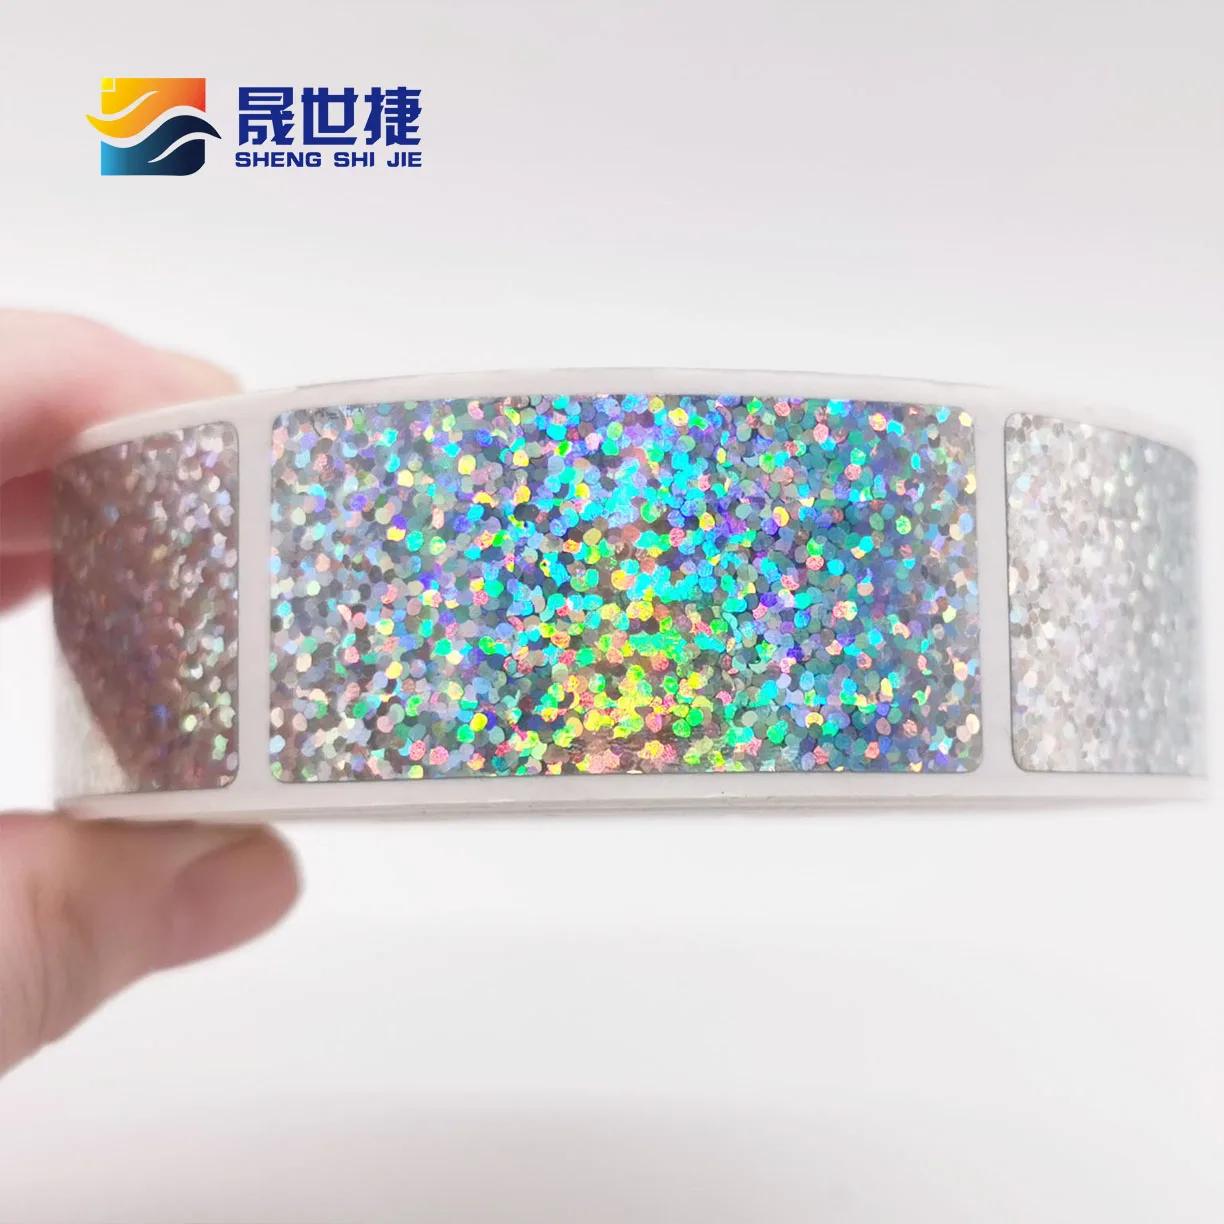 shengshijie-–-autocollants-a-gratter-laser-25x50mm-50-pieces-paquet-1x2-pour-les-activites-de-fete